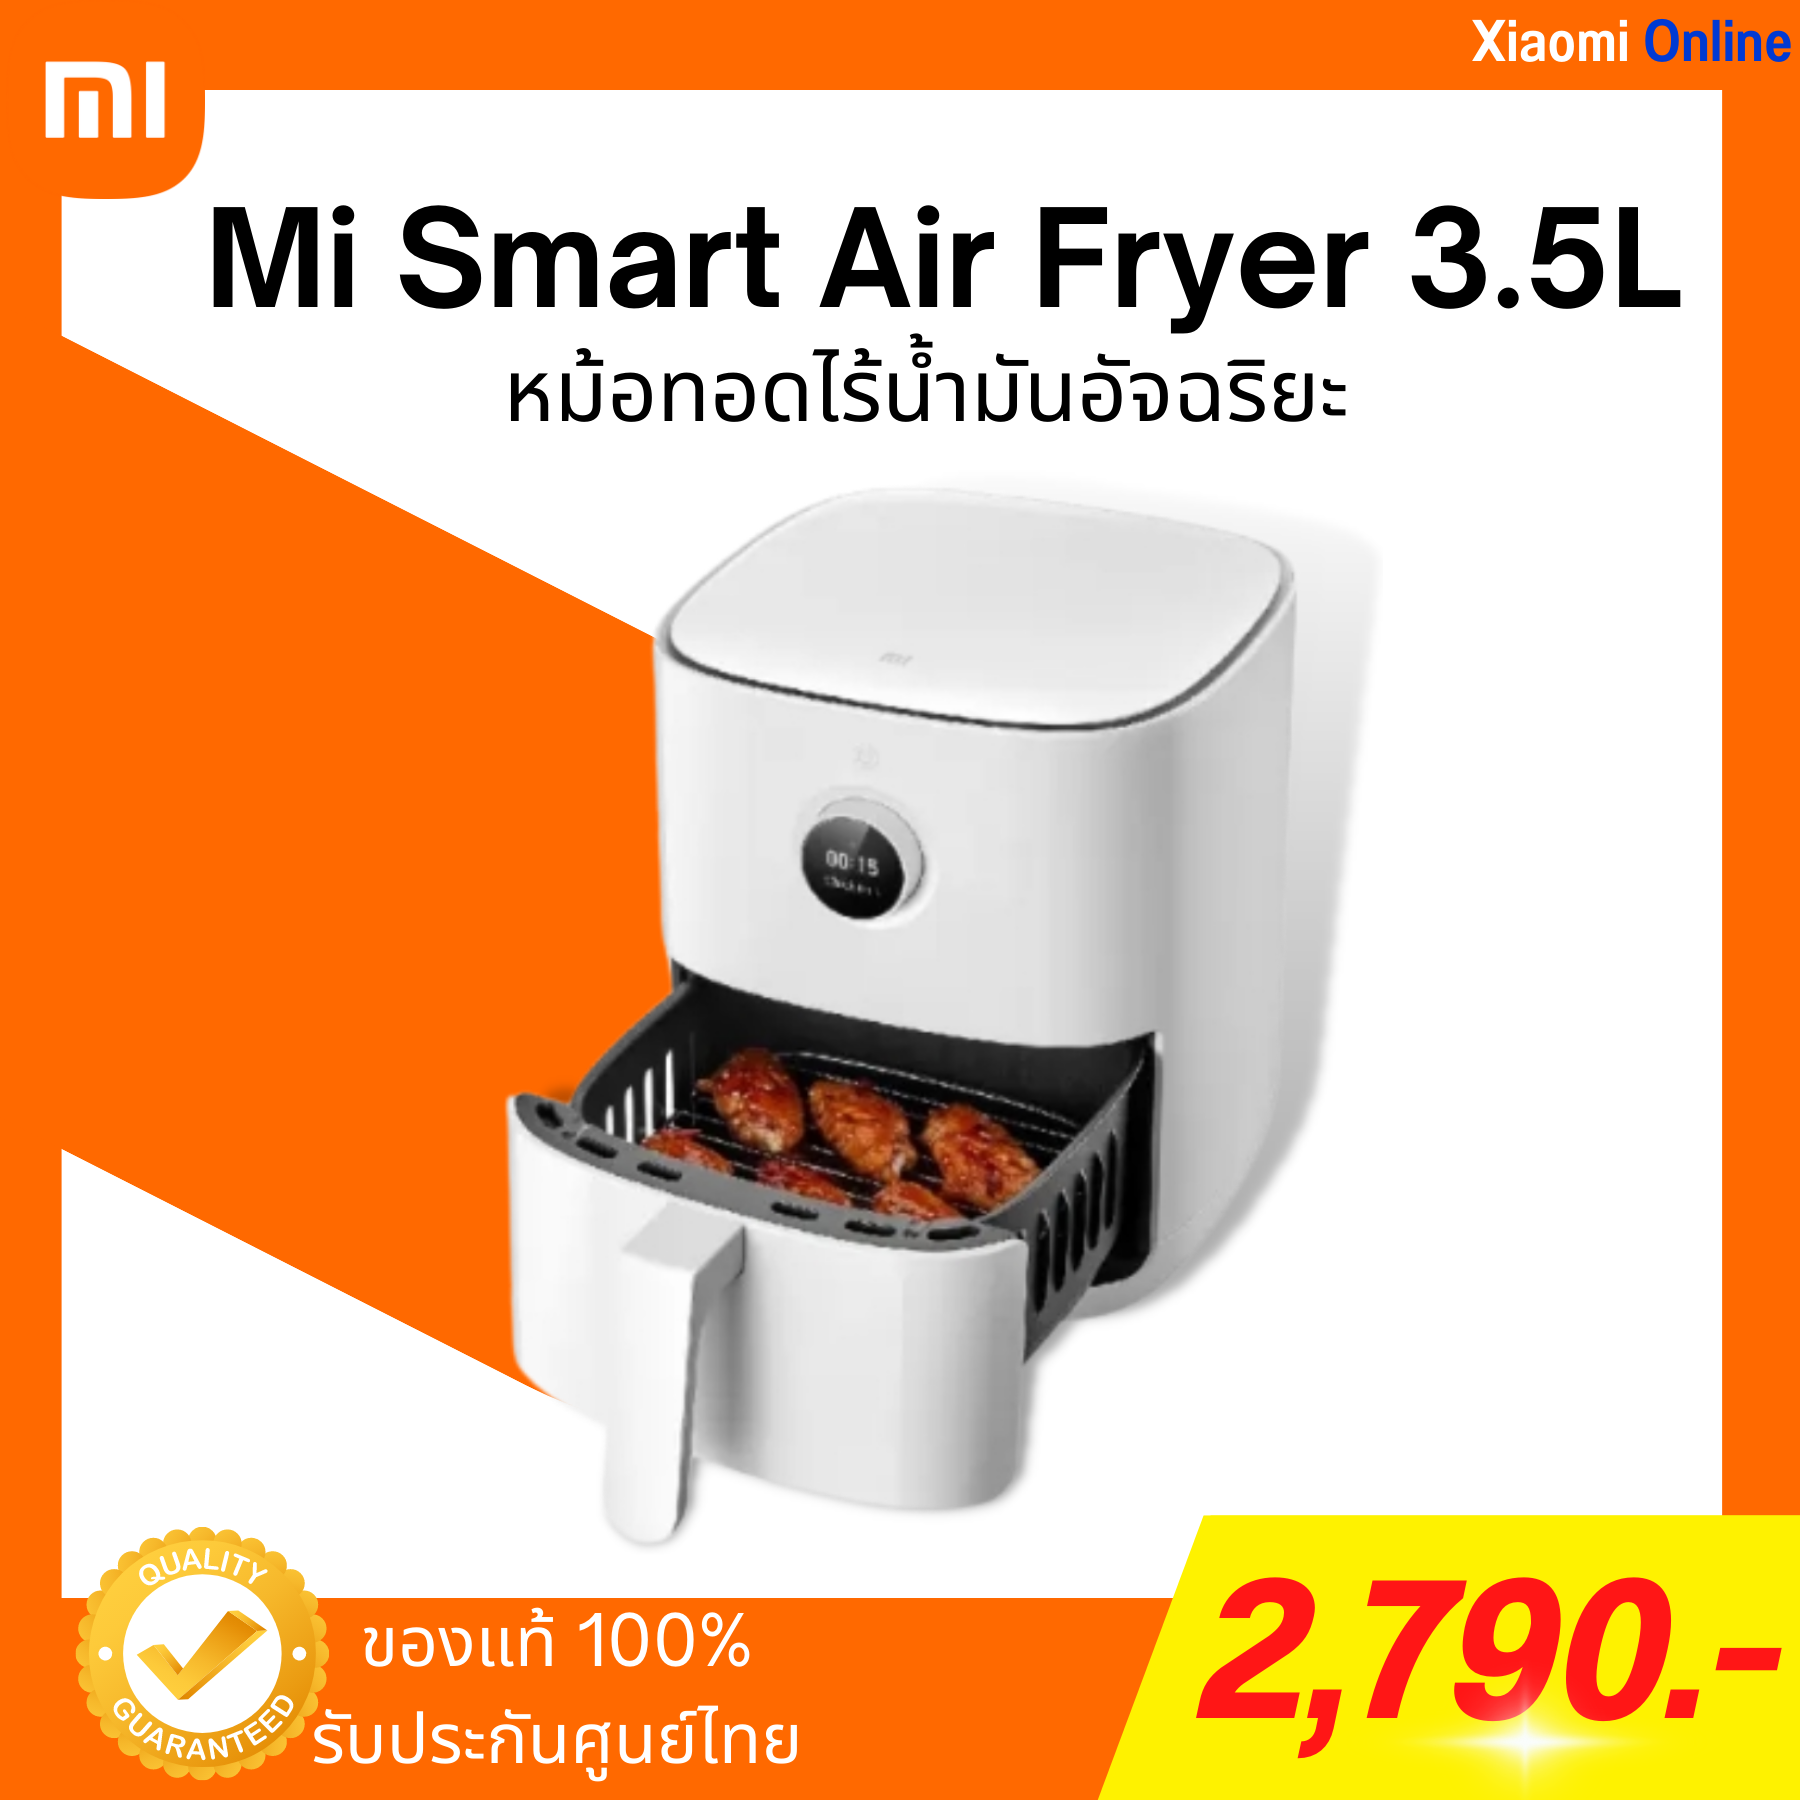 หม้อทอดไร้น้ำมัน Xiaomi Mi Smart Air Fryer 3.5L